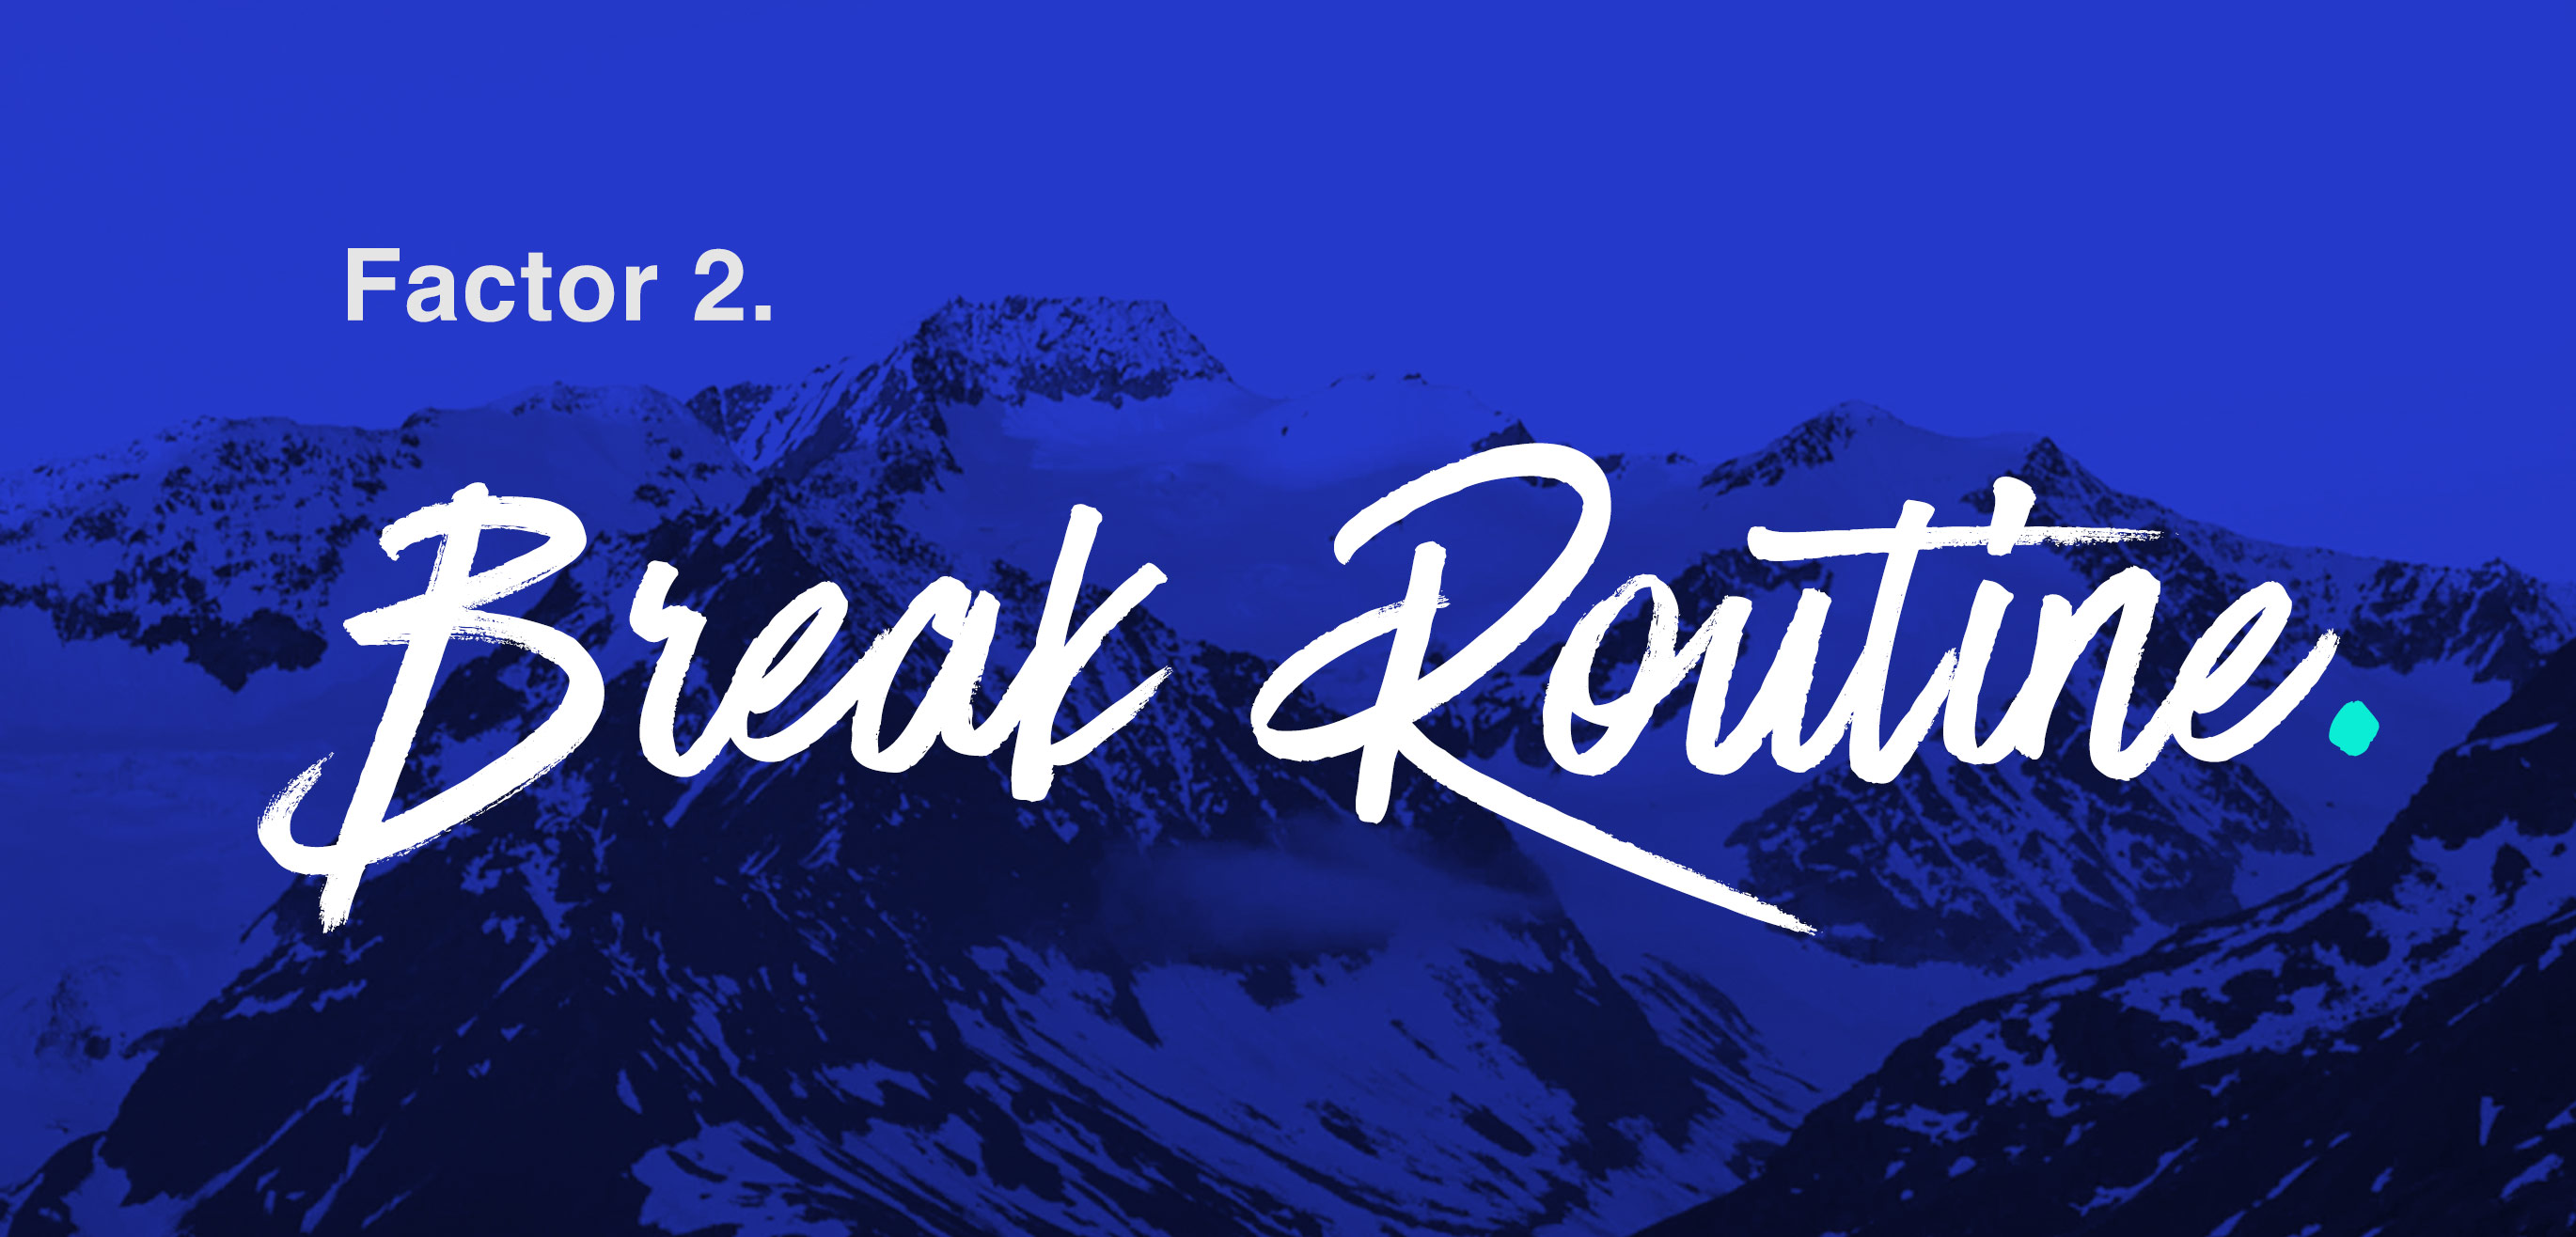 break routine text over mountains